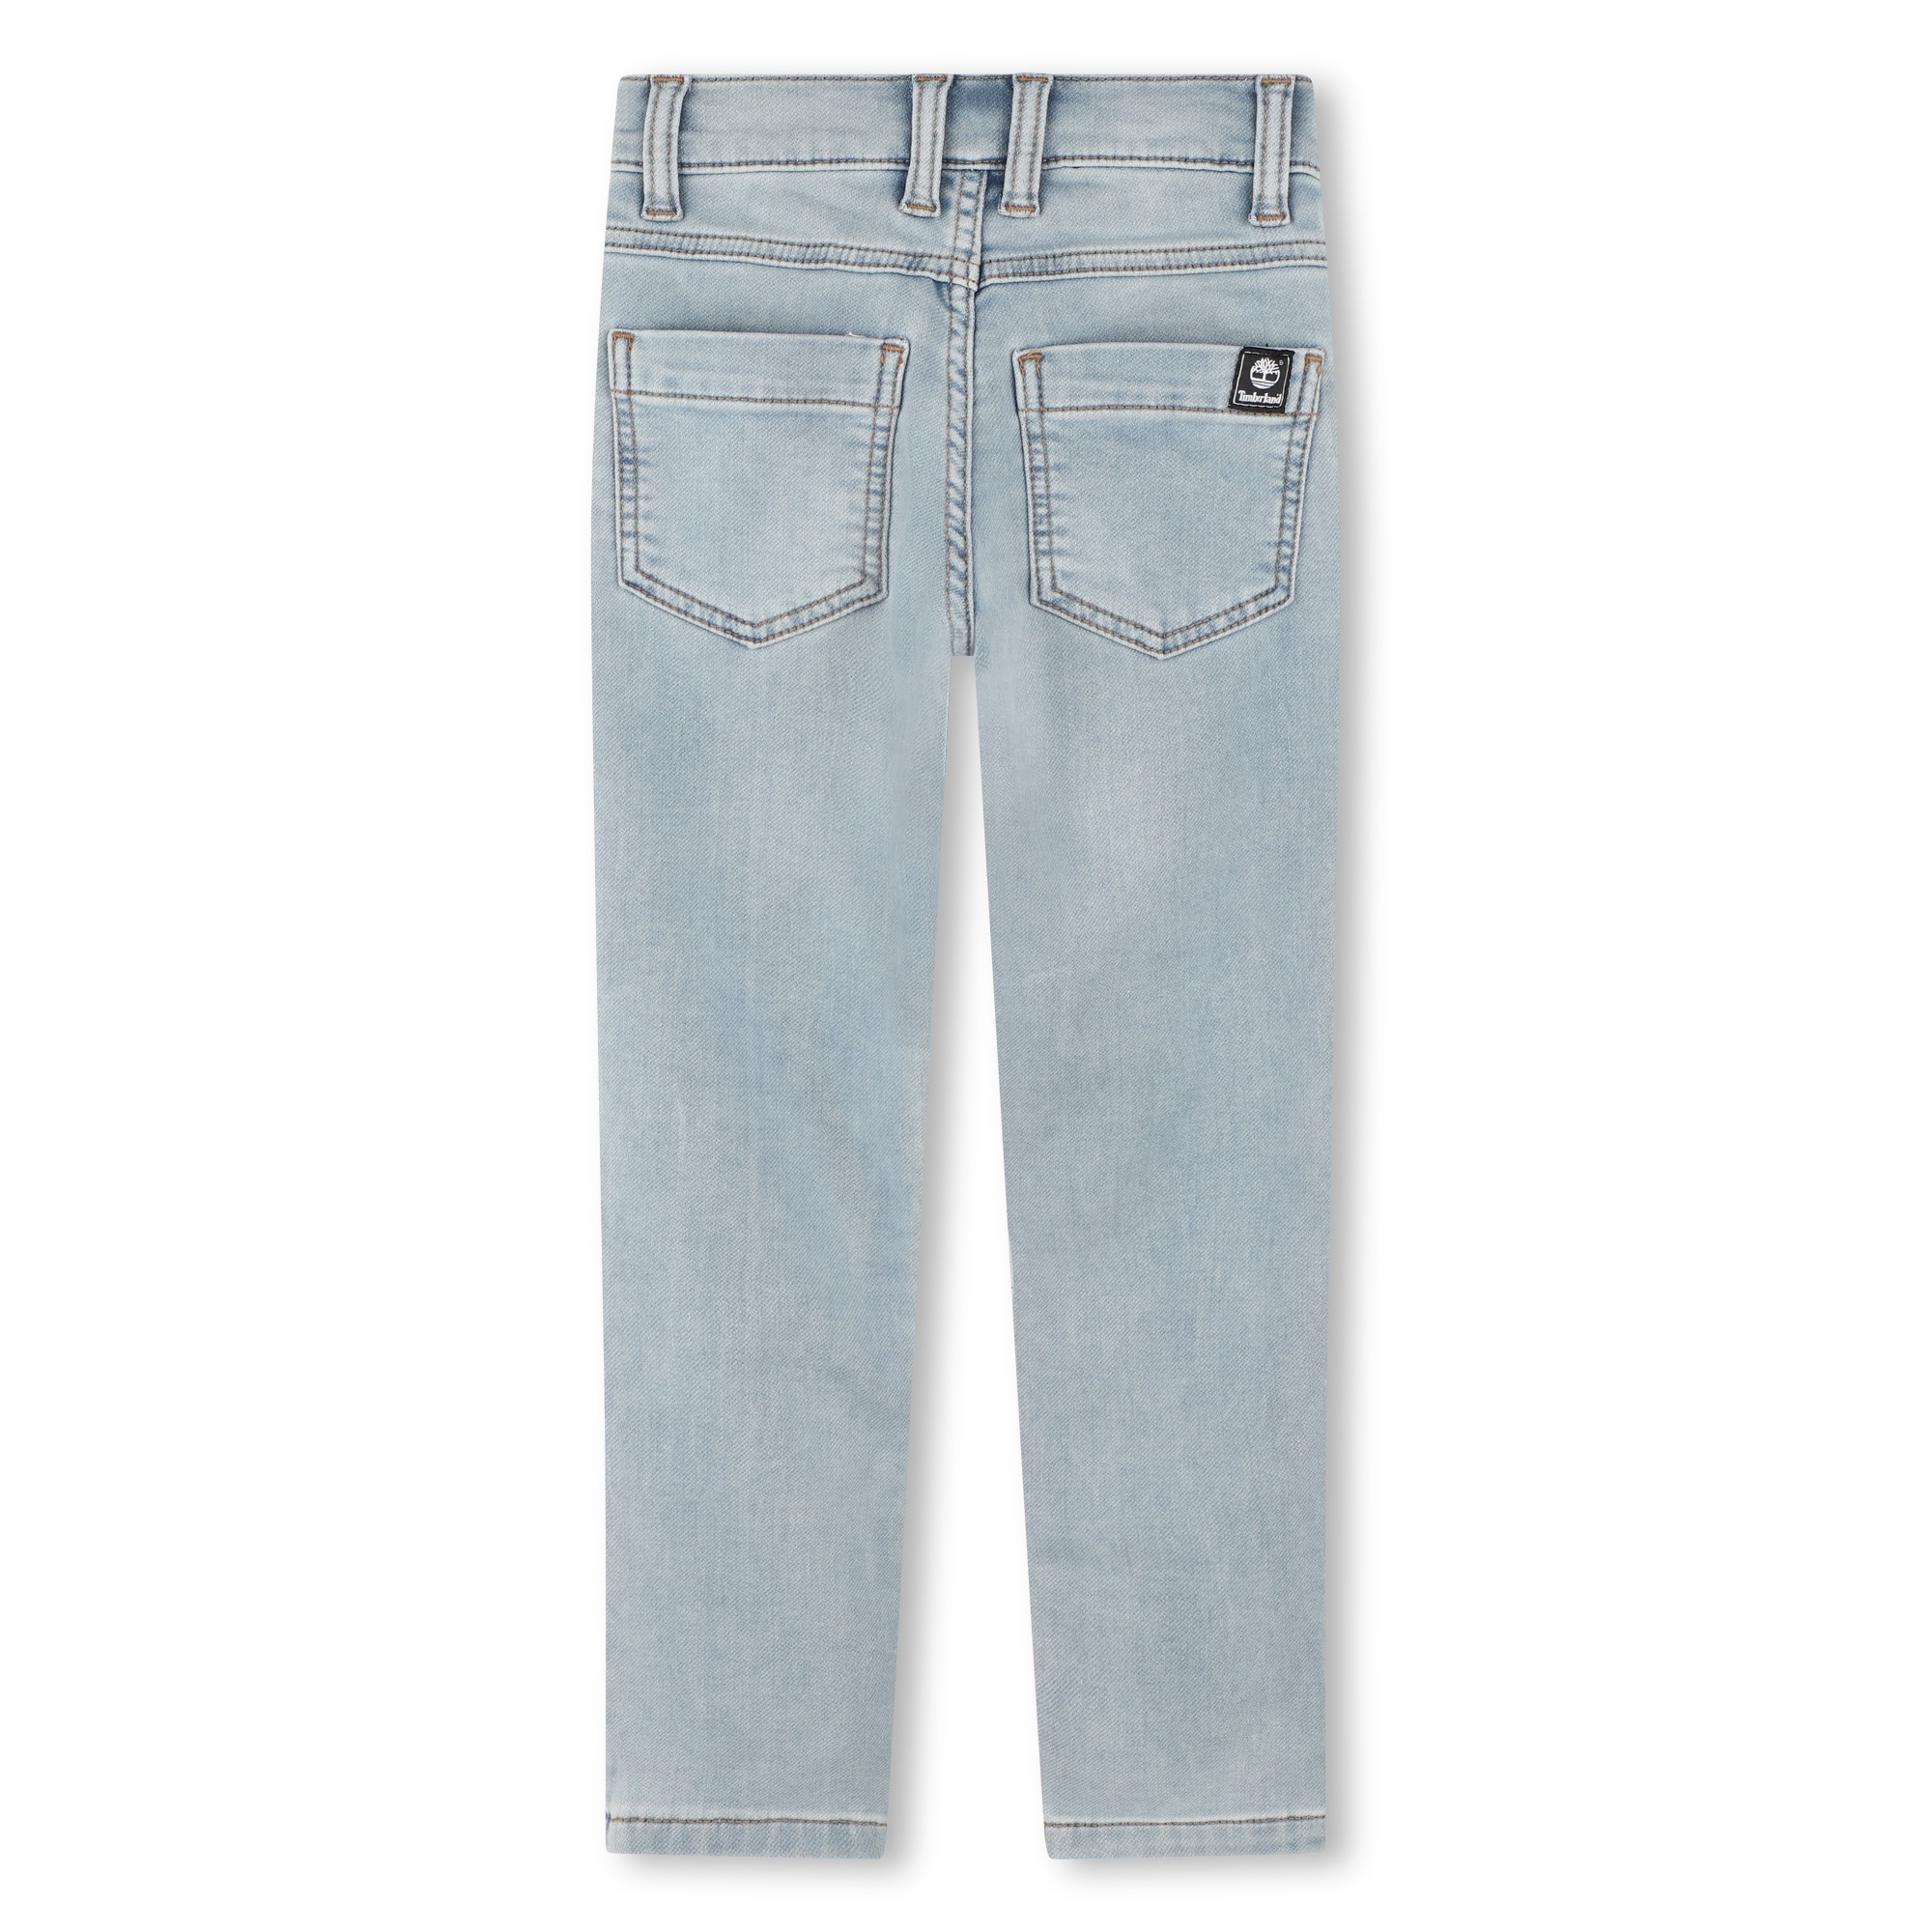 Taillierte 5-Pocket-Jeans TIMBERLAND Für JUNGE